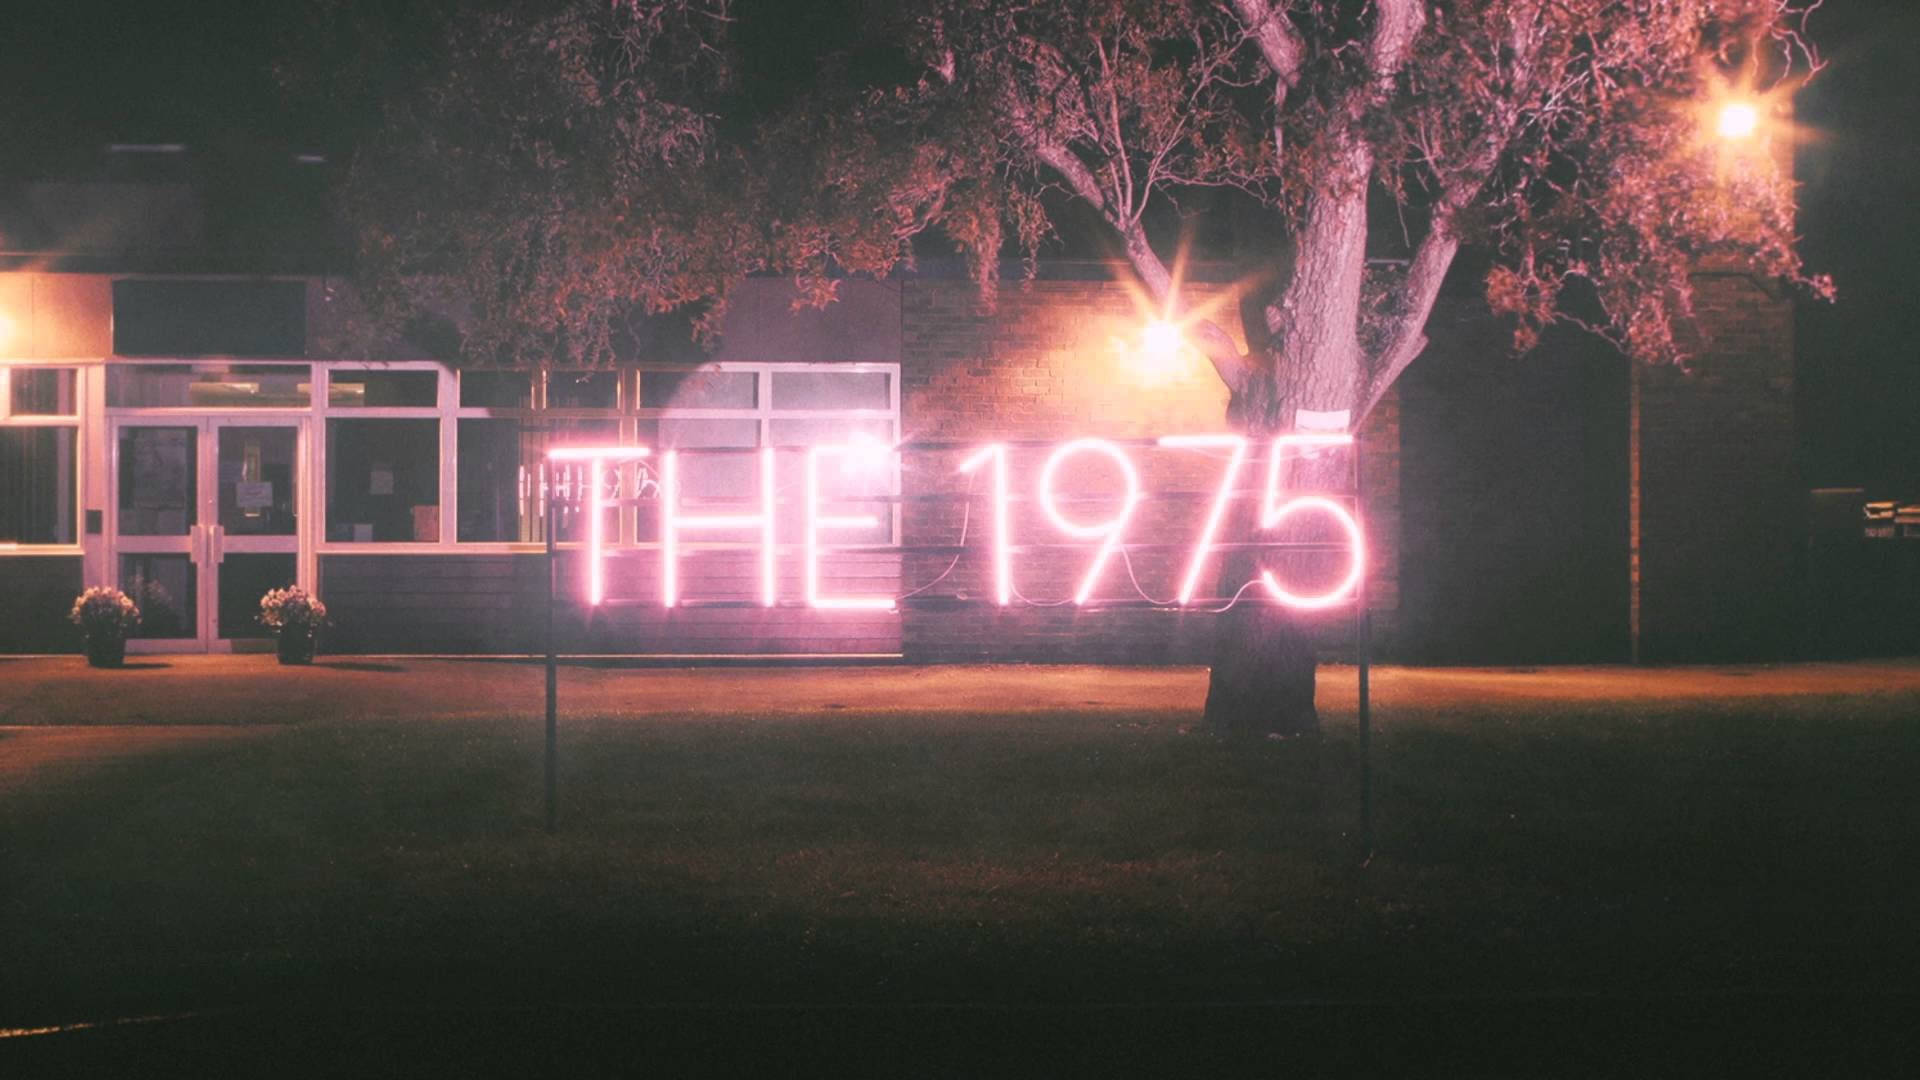 The 1975 Lighting Signage Background